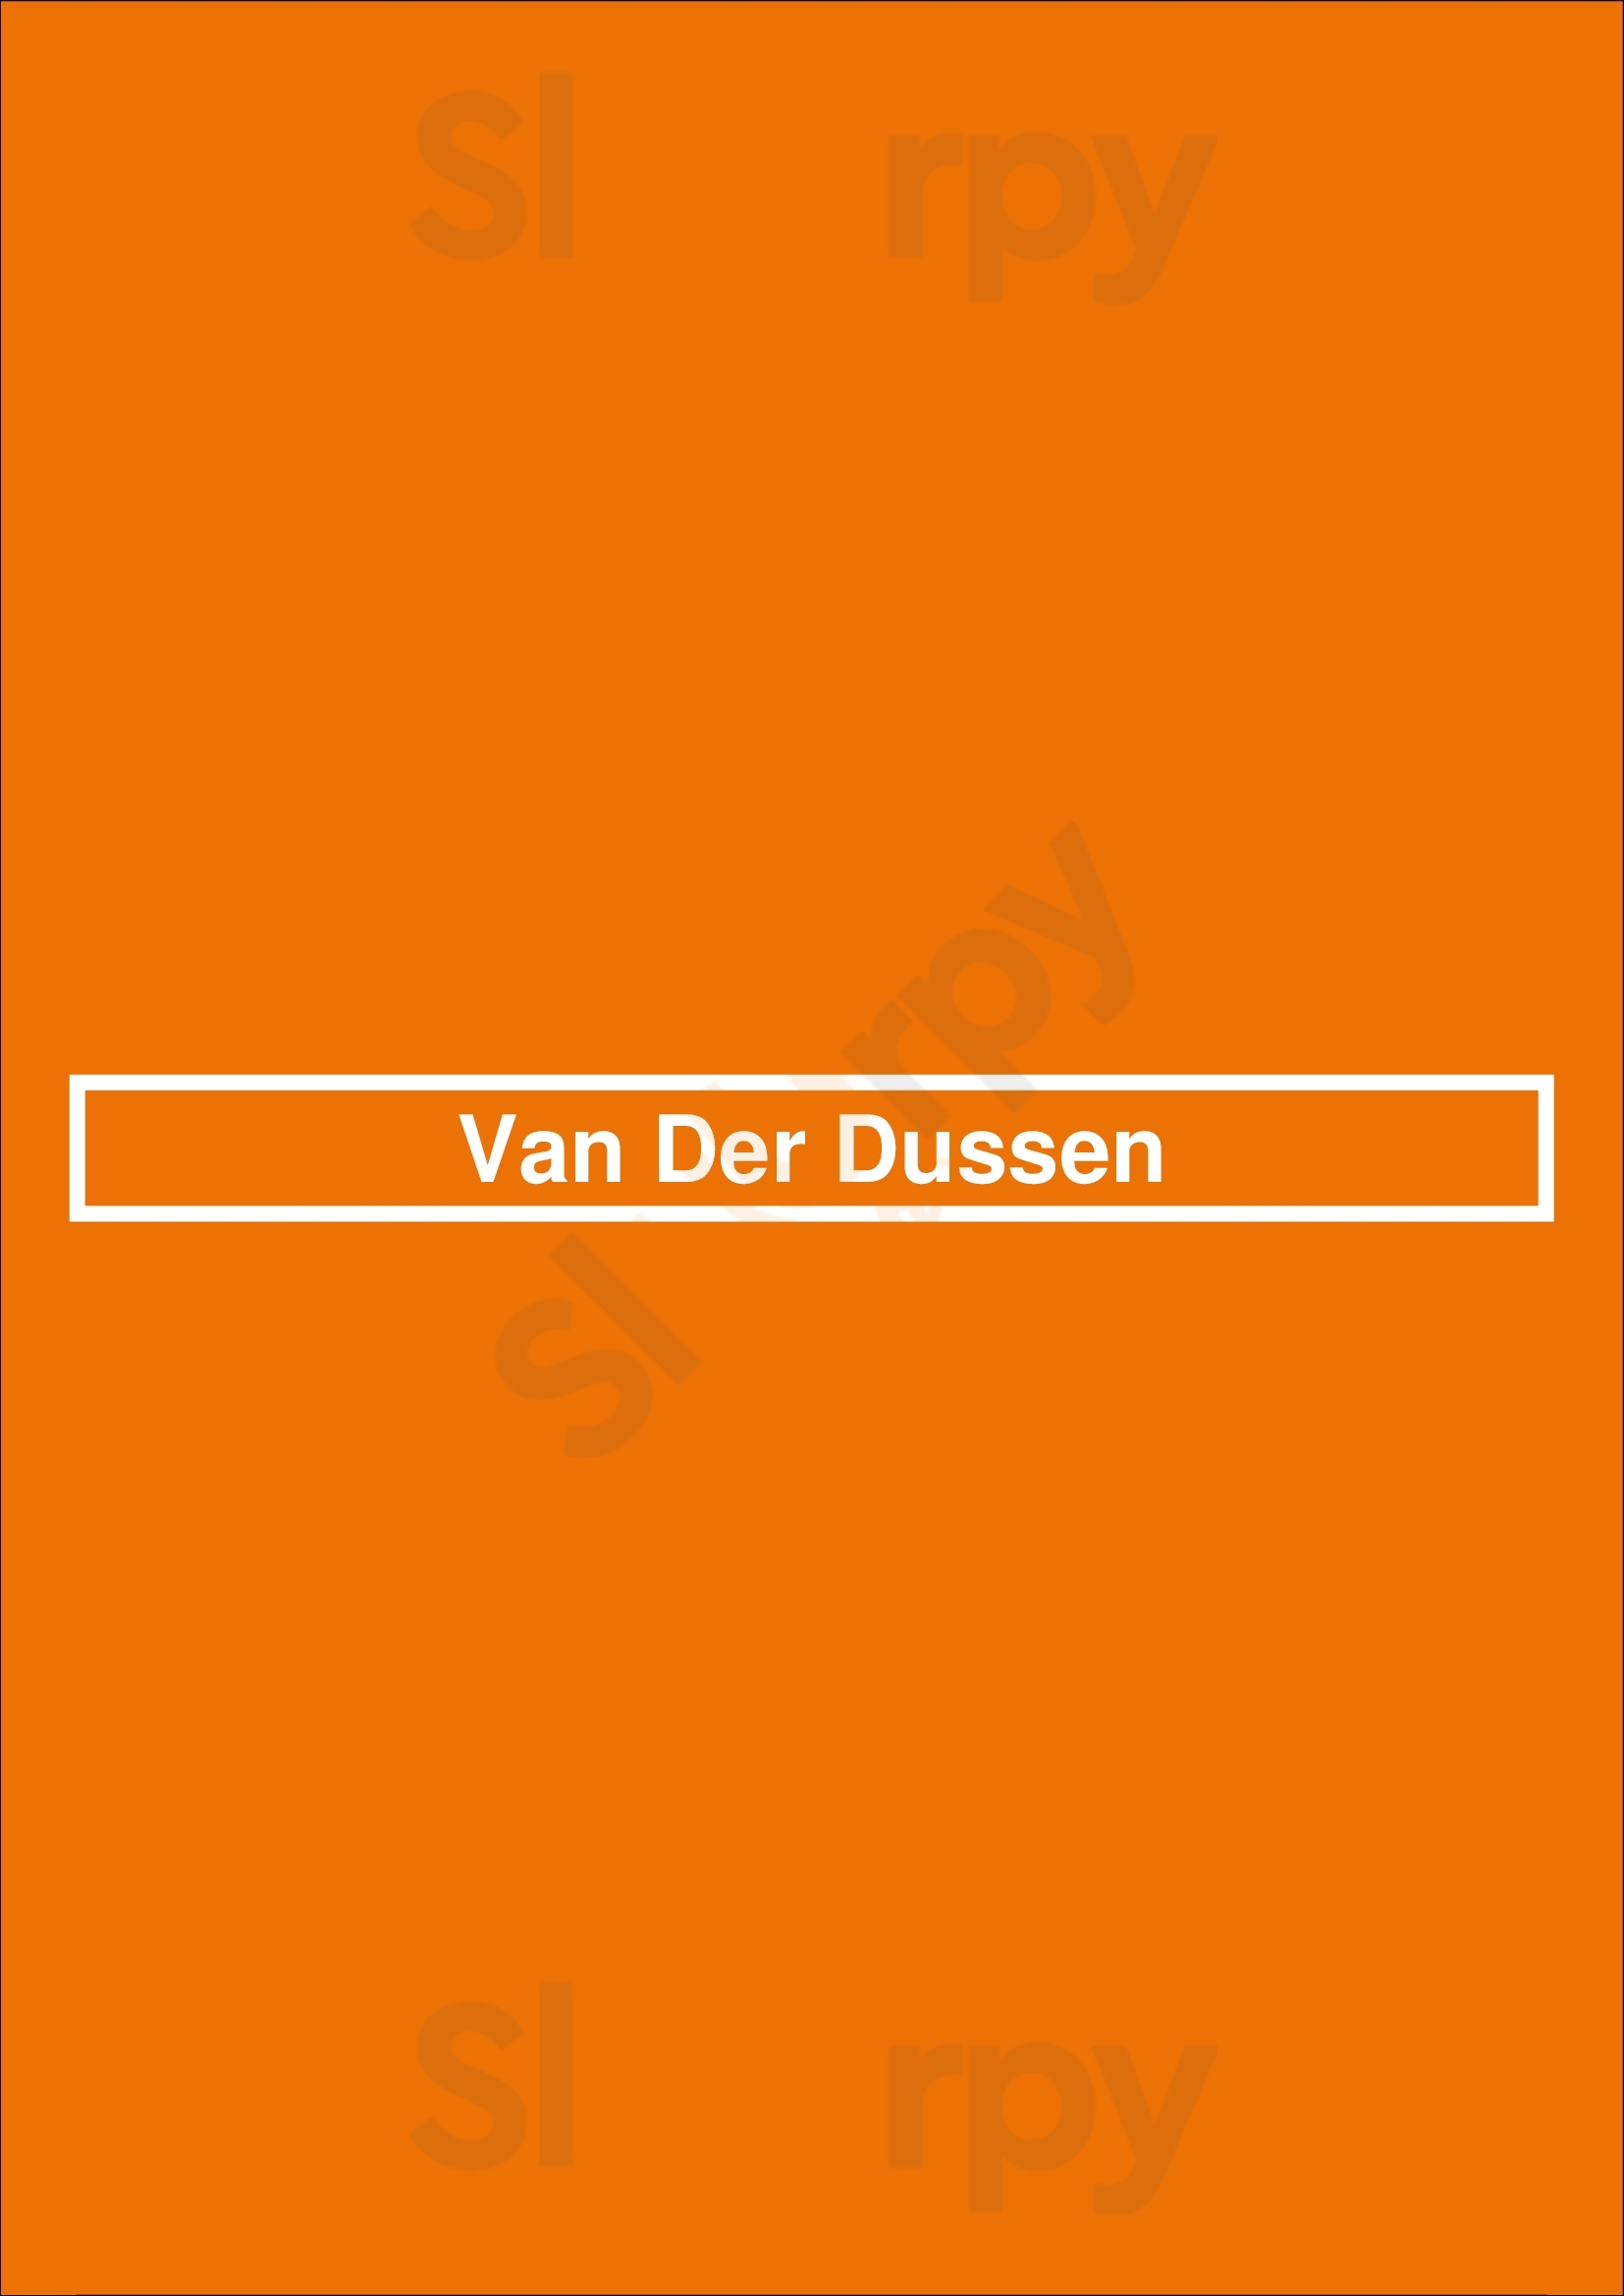 Van Der Dussen Delft Menu - 1